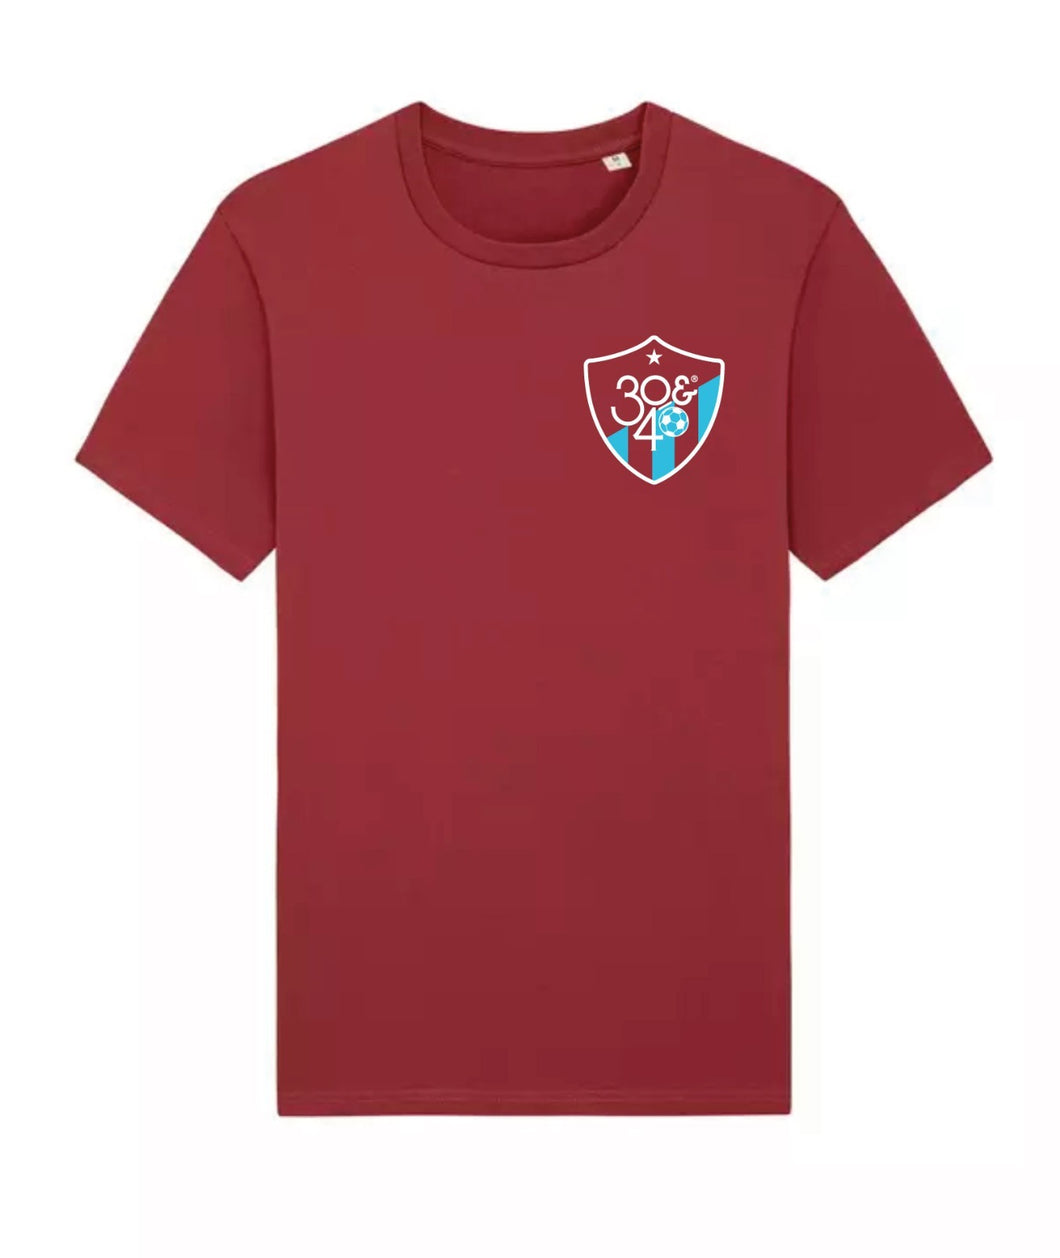 T-Shirt 30&40 Football Club